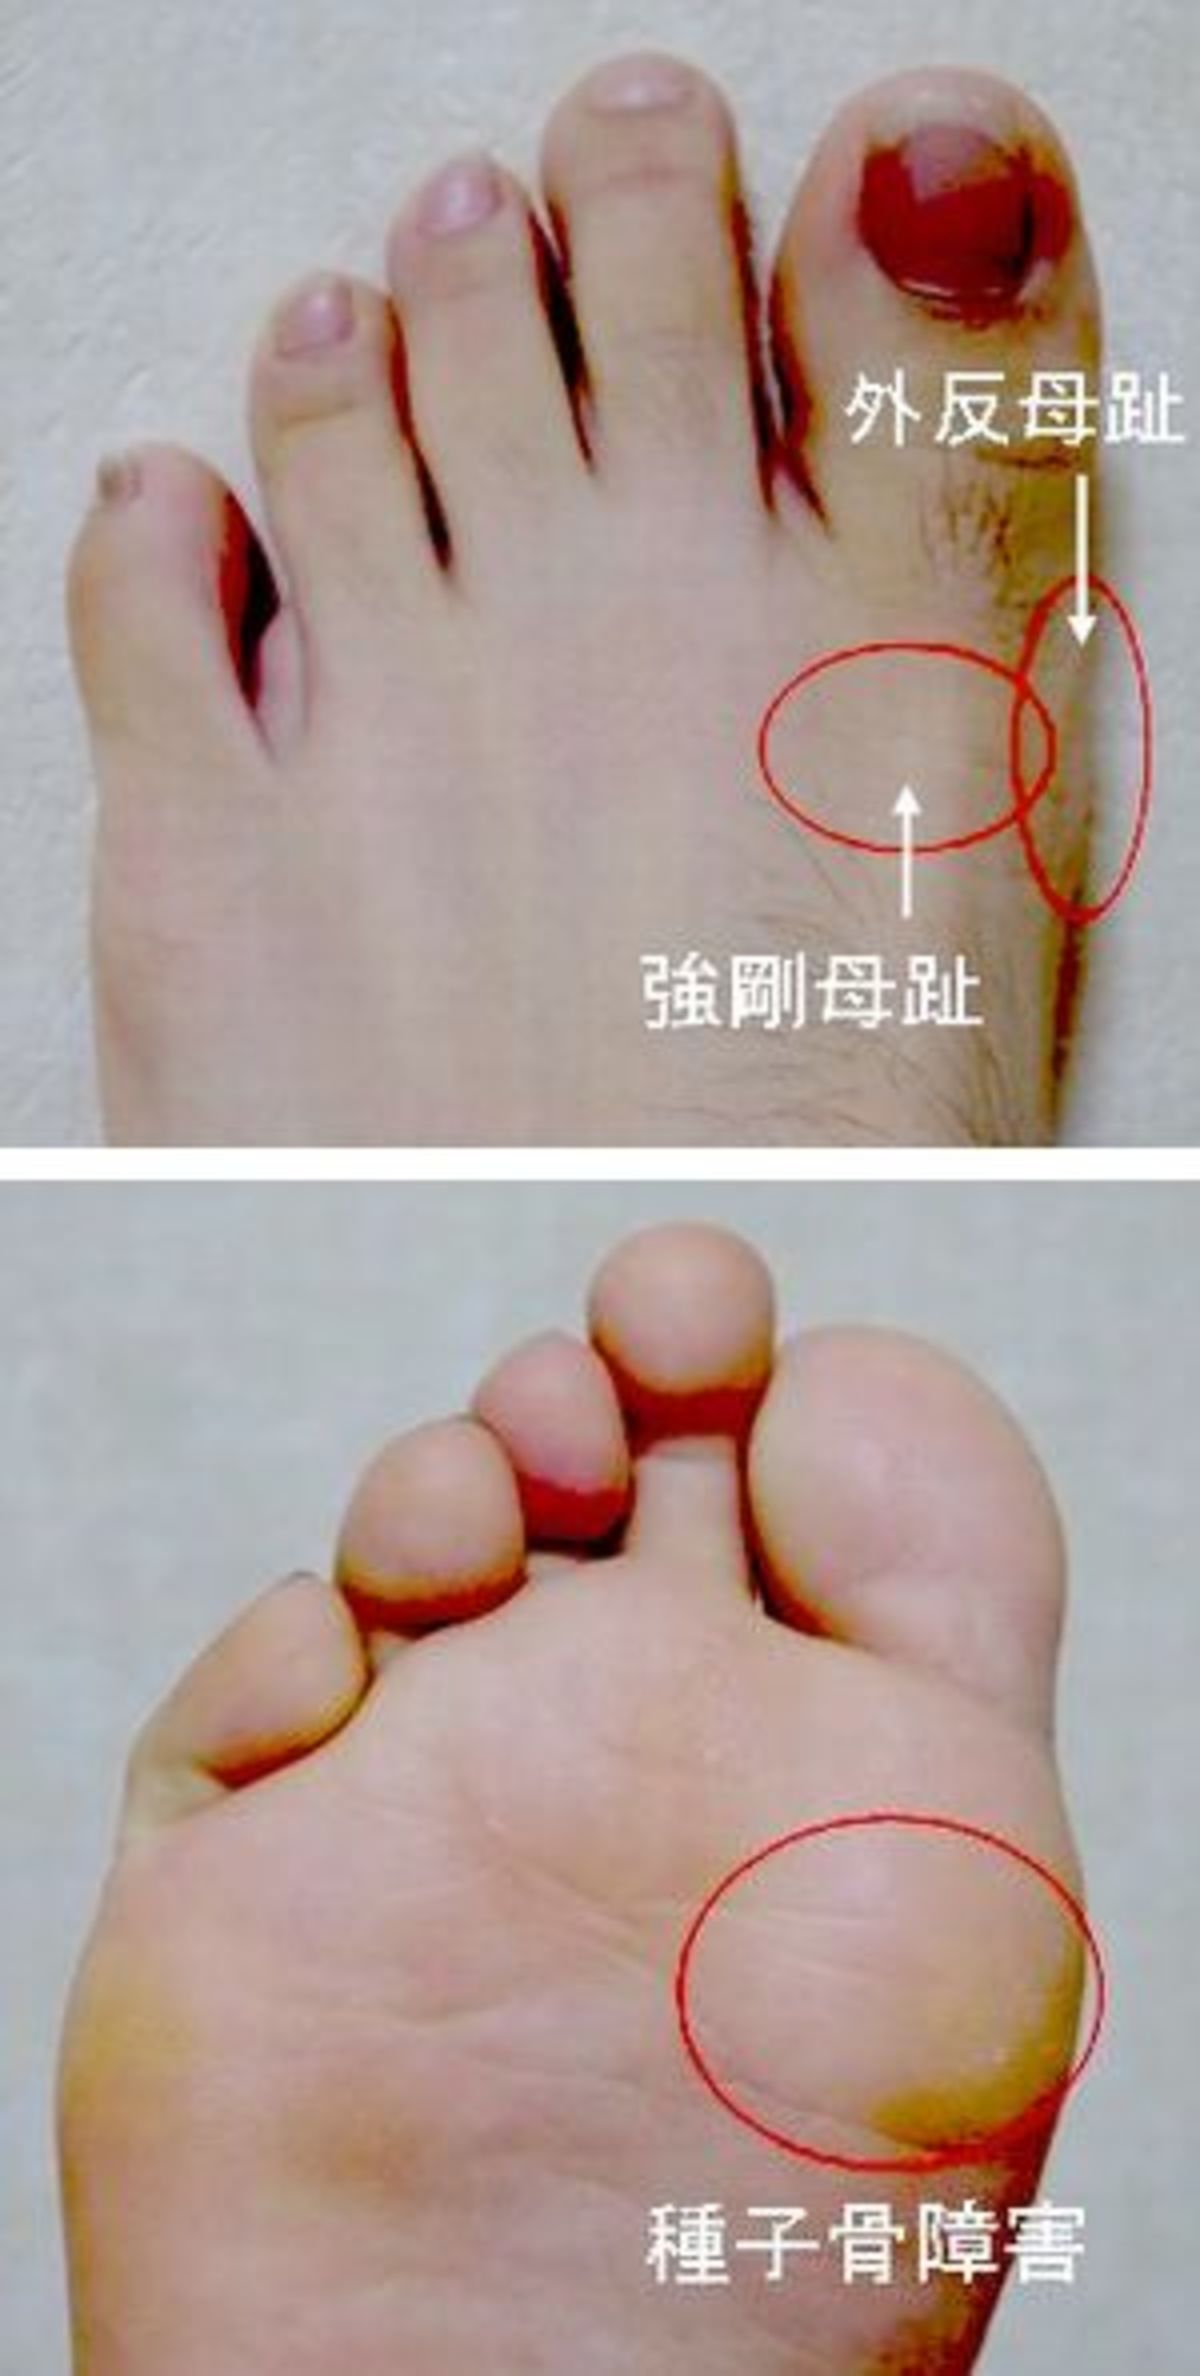 足のトラブル 健康相談 徳島新聞